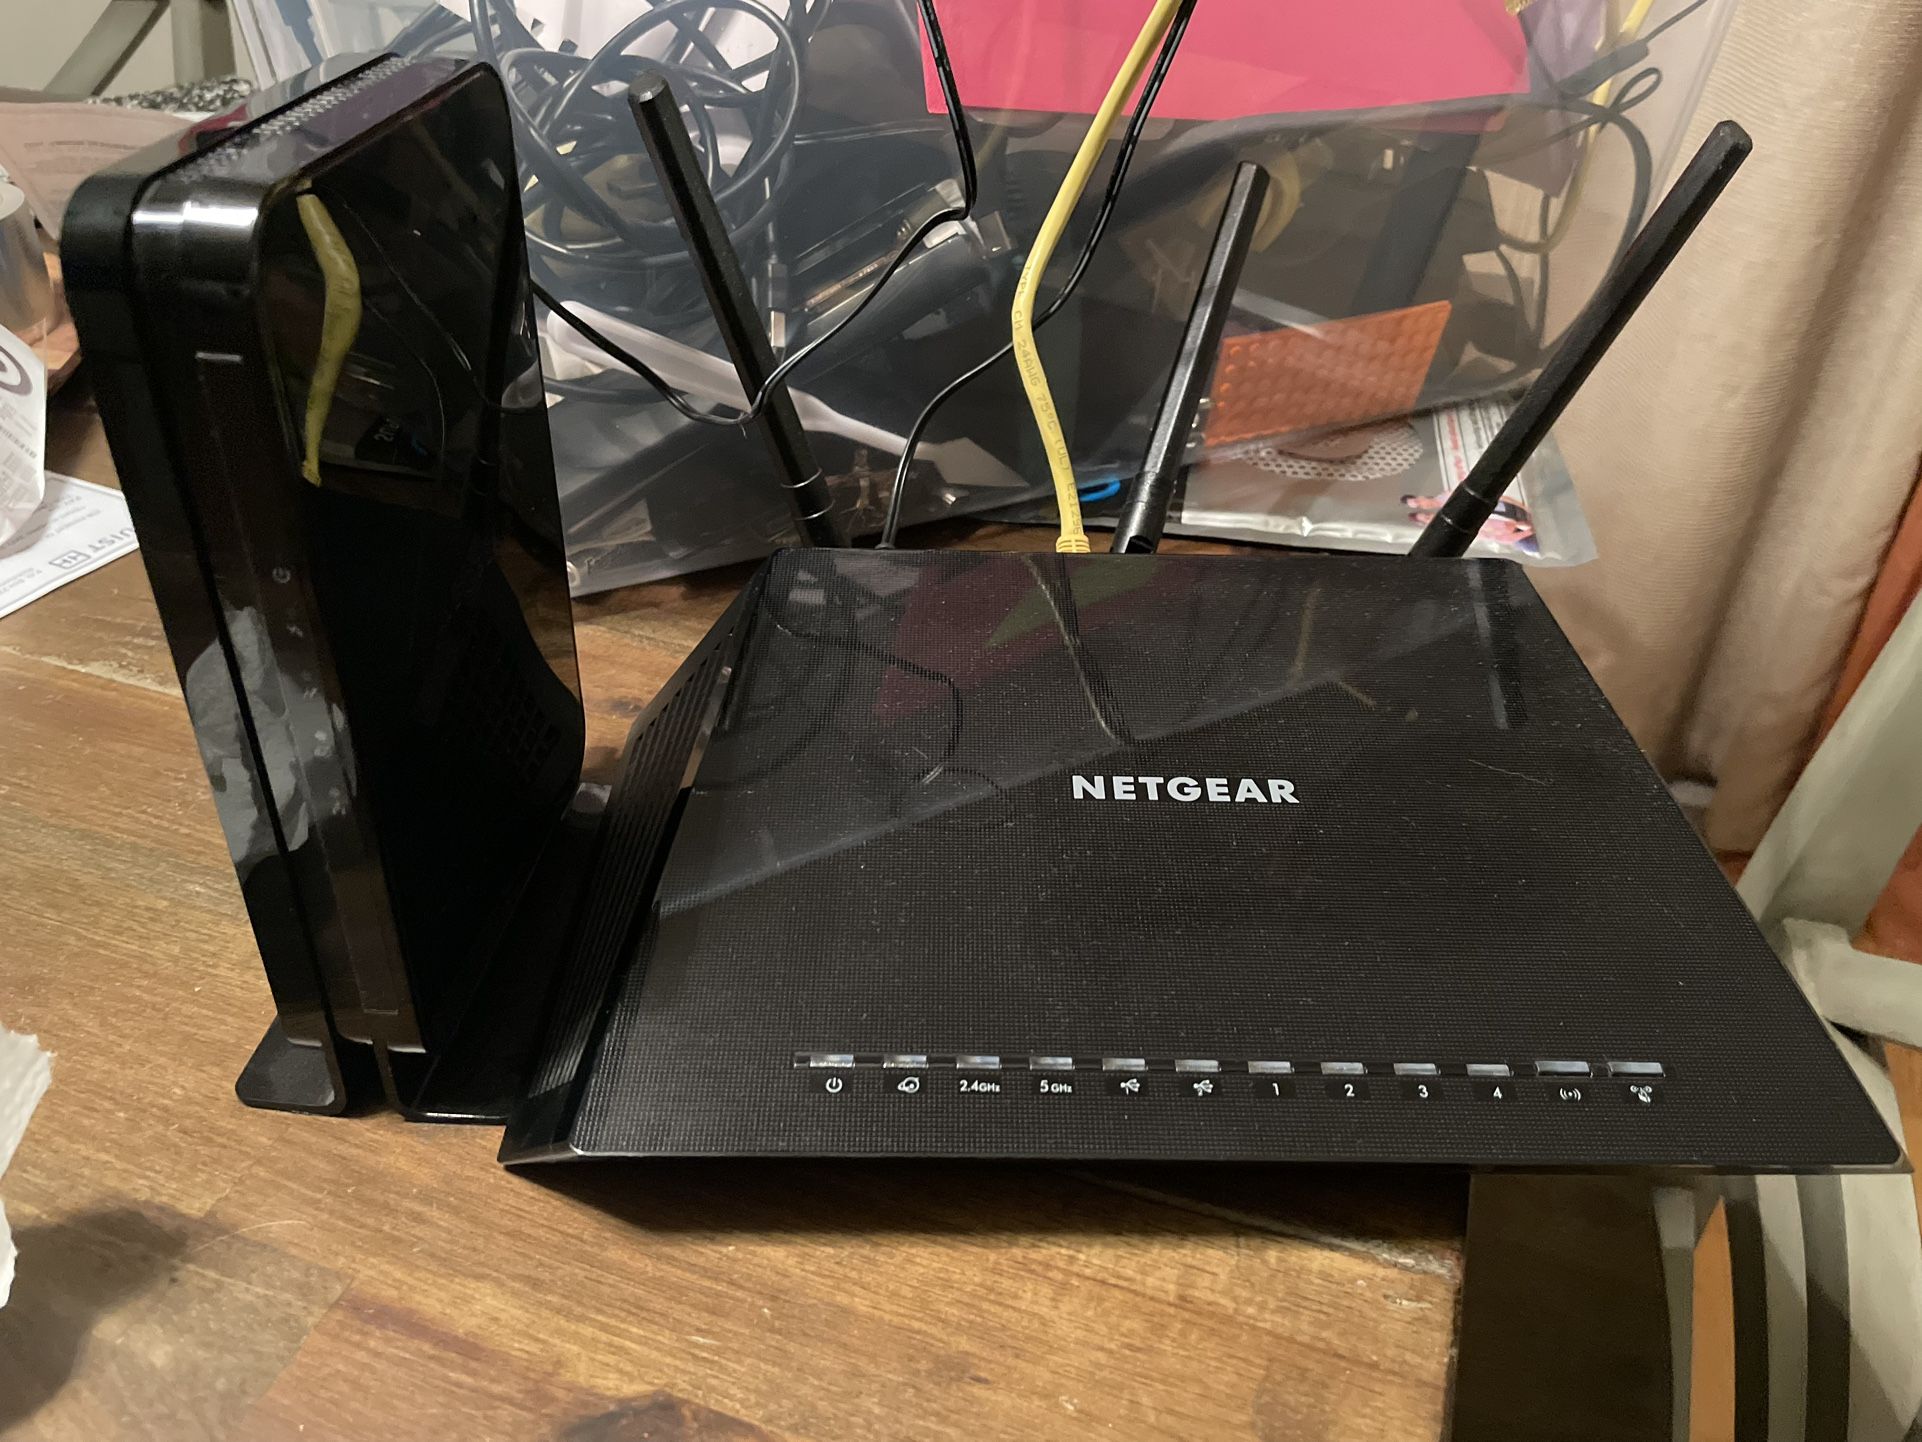 Netgear Modem And Router